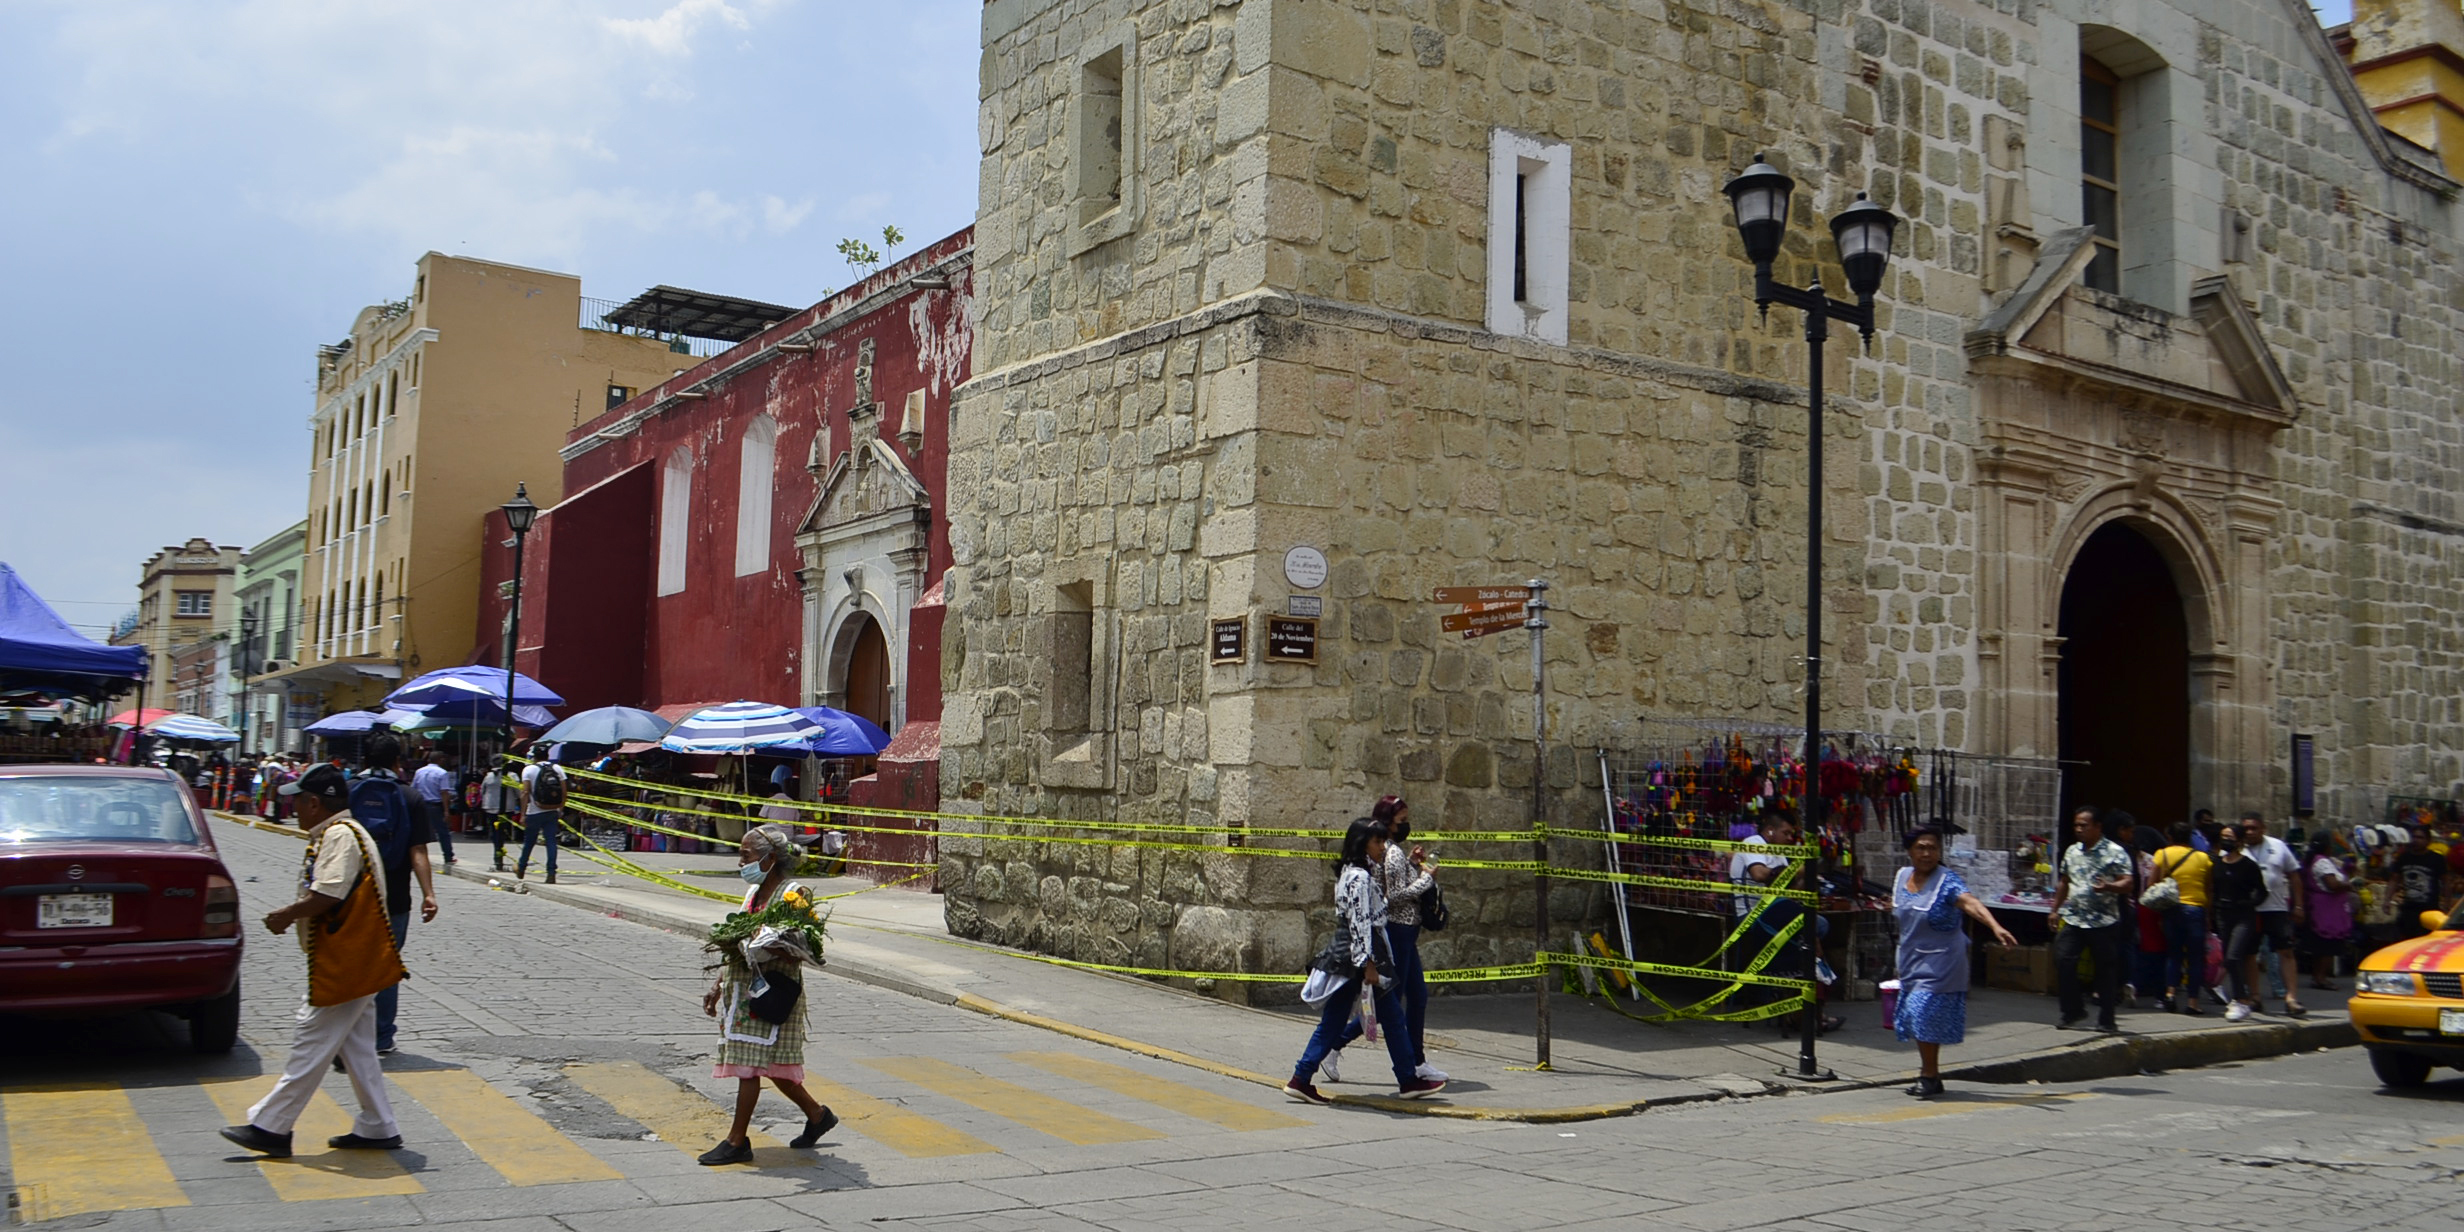 Presenta daño en el campanario el templo de San Juan de Dios | El Imparcial de Oaxaca